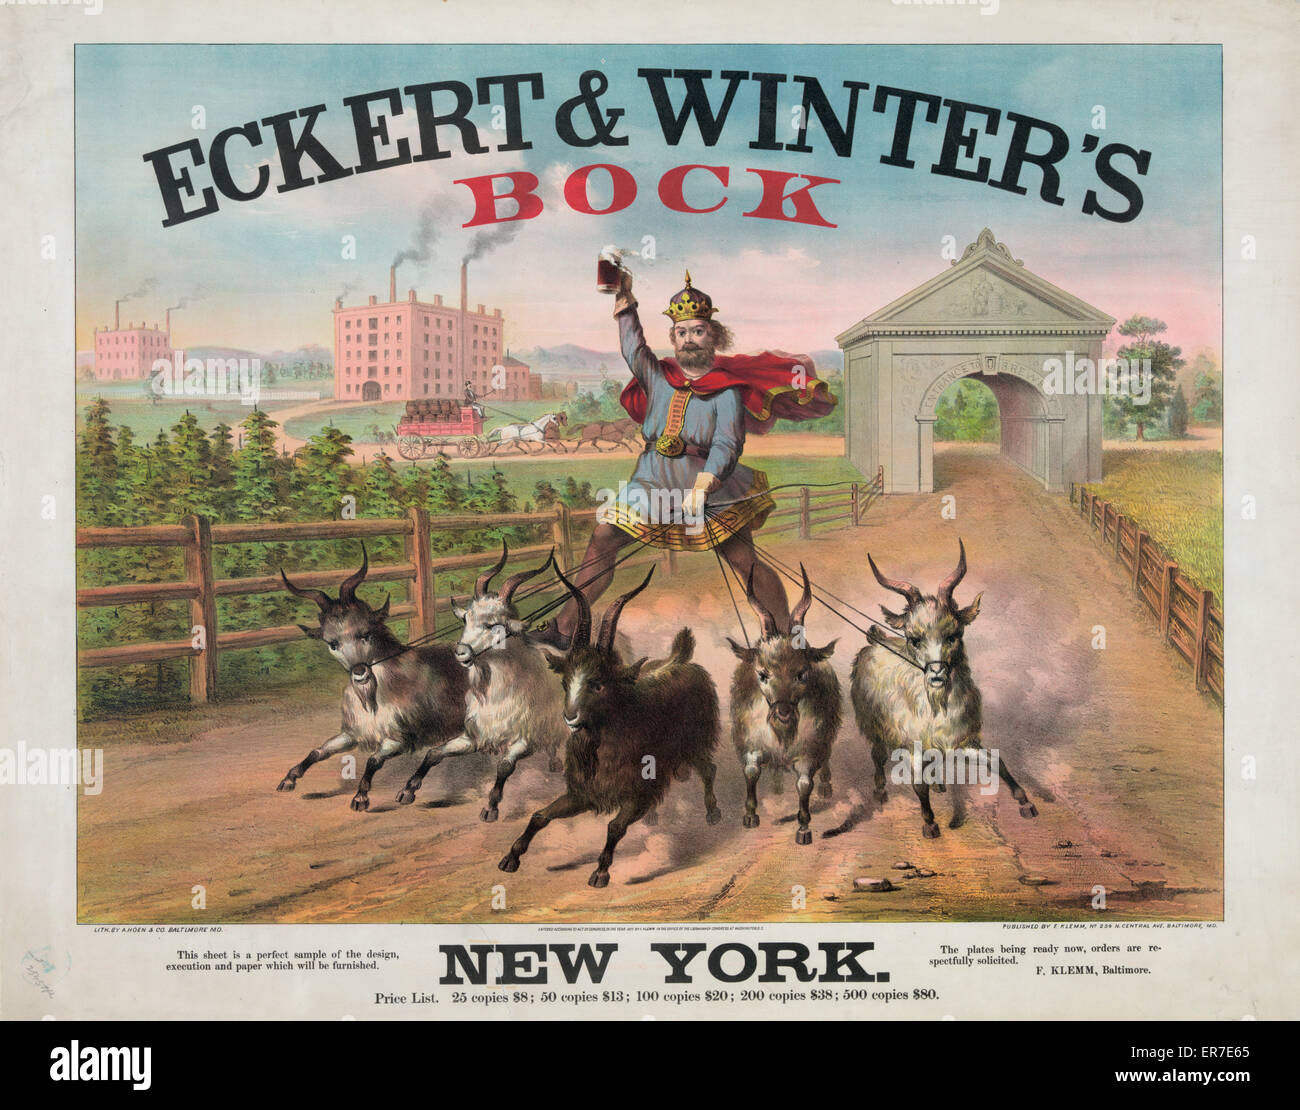 Eckert & Winter's Bock - New York Stock Photo